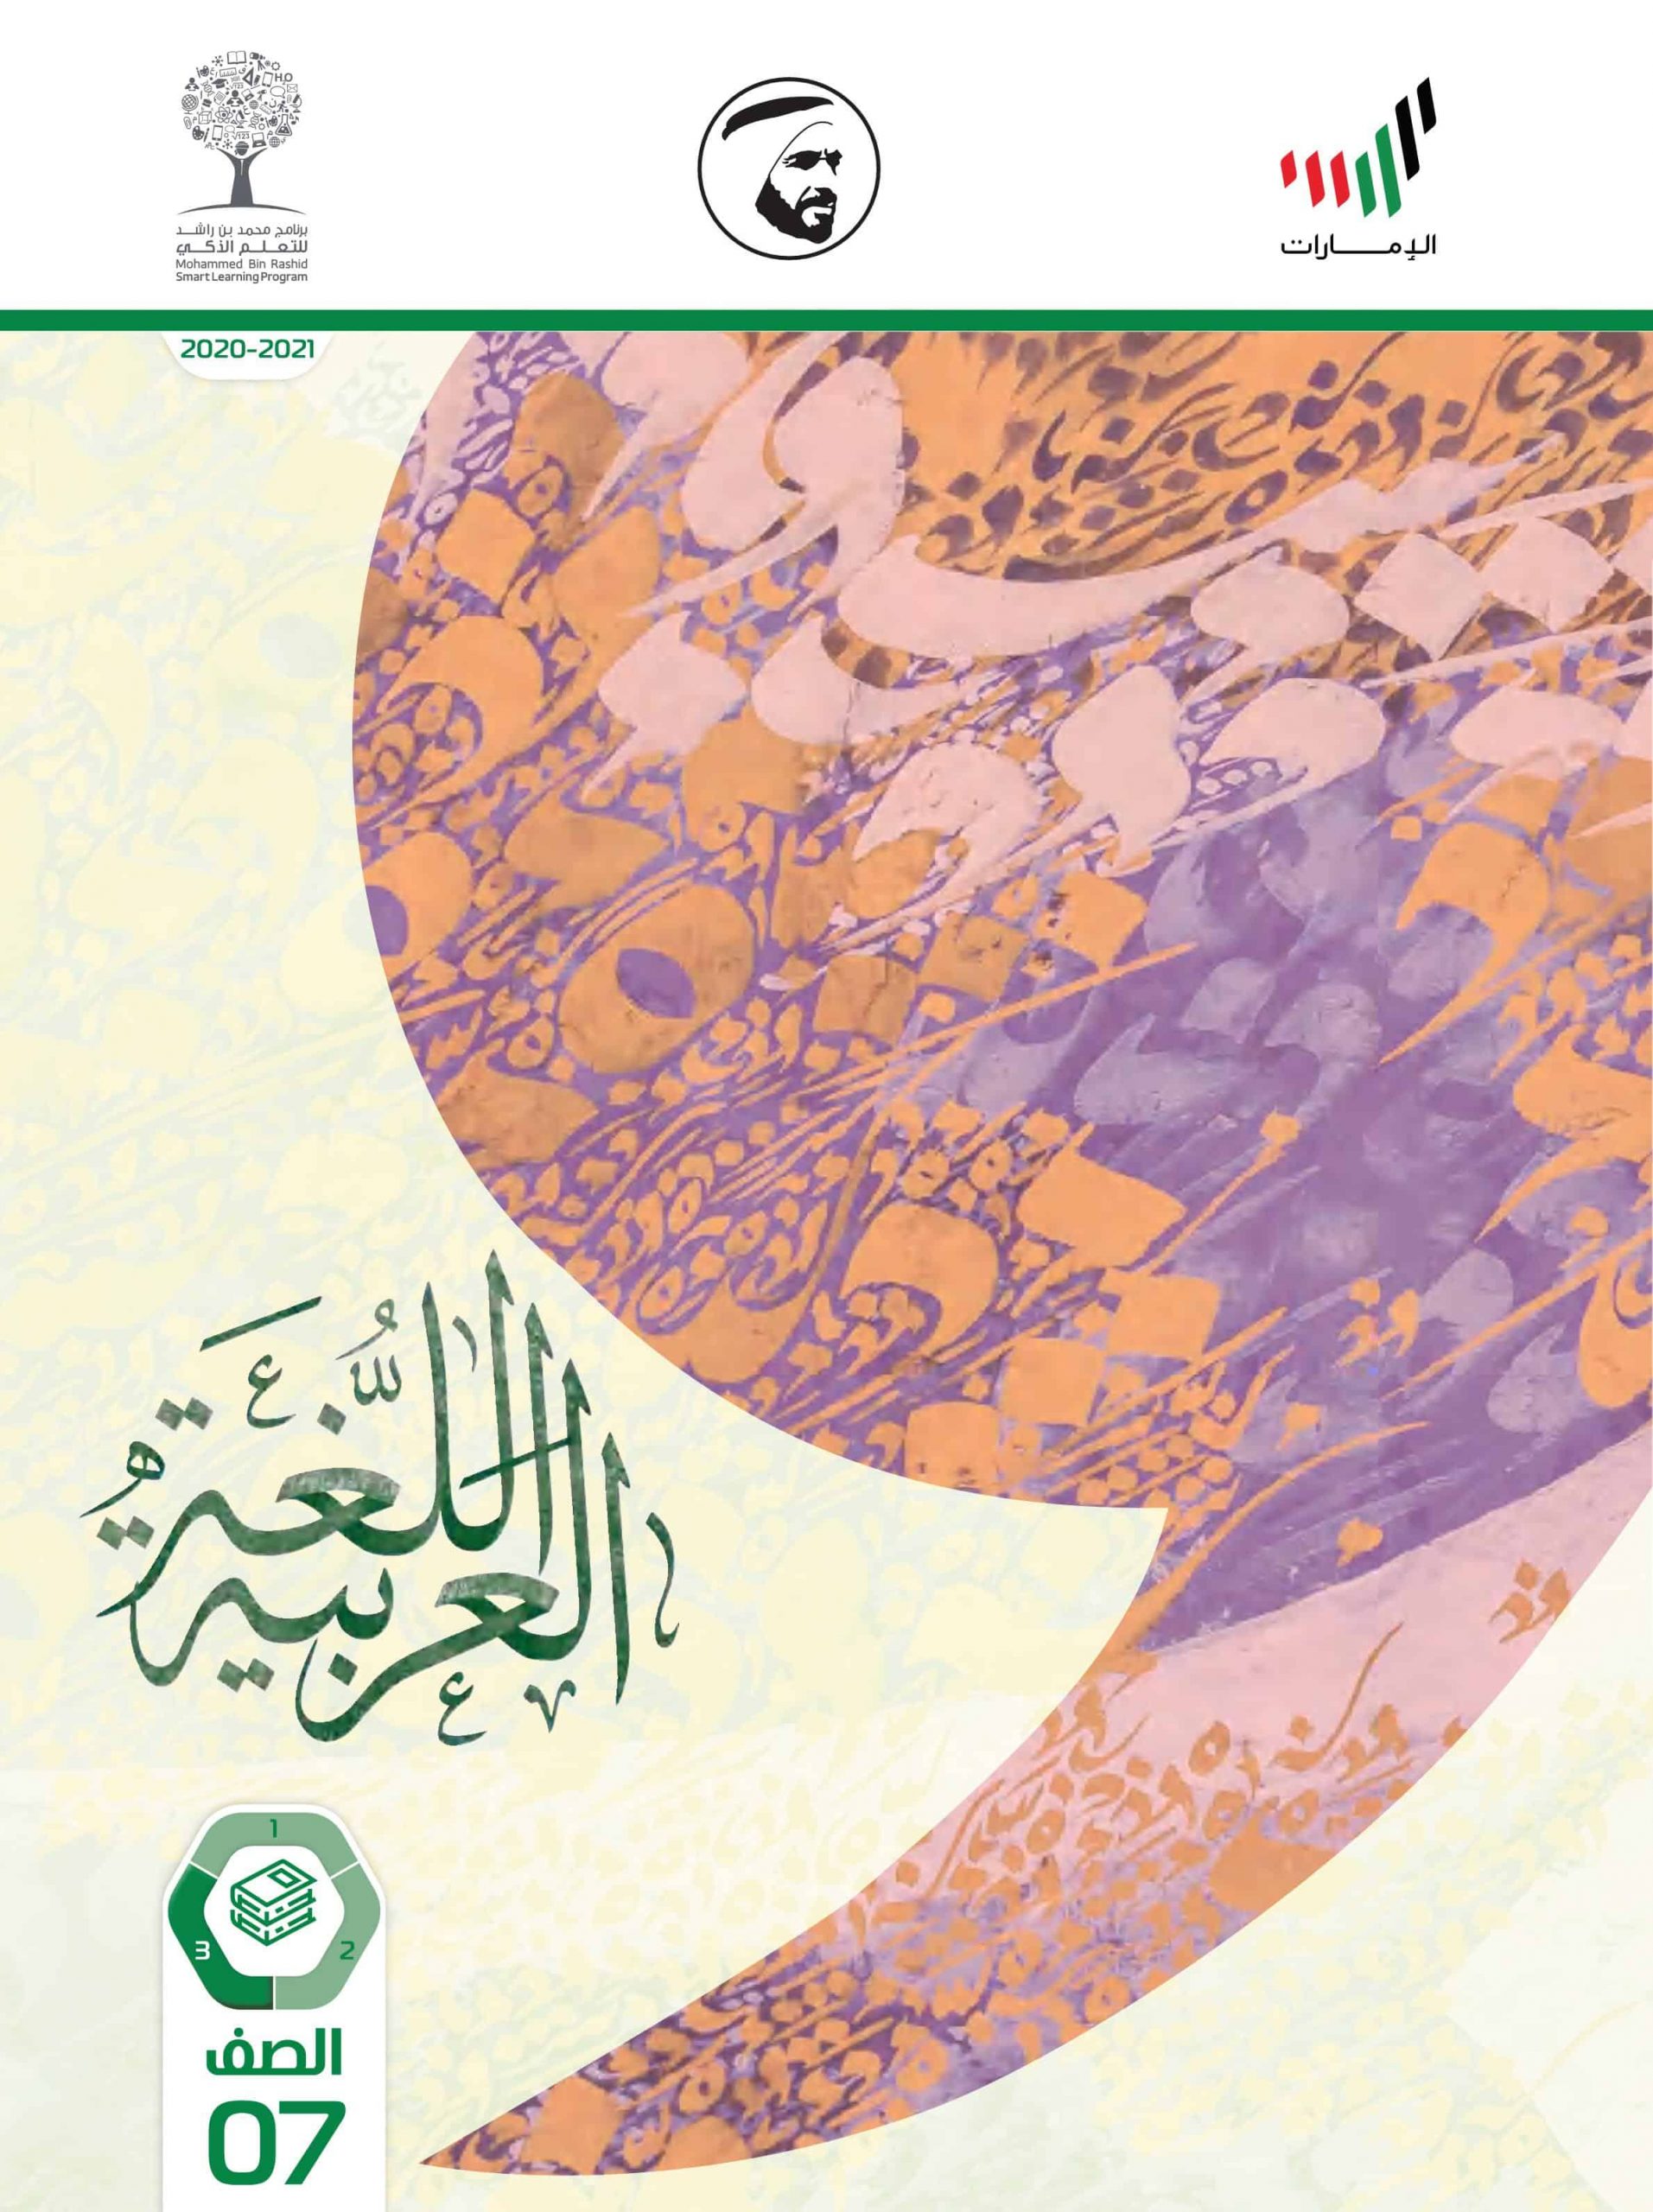 كتاب الطالب الفصل الدراسي الثالث 2020-2021 الصف السابع مادة اللغة العربية 